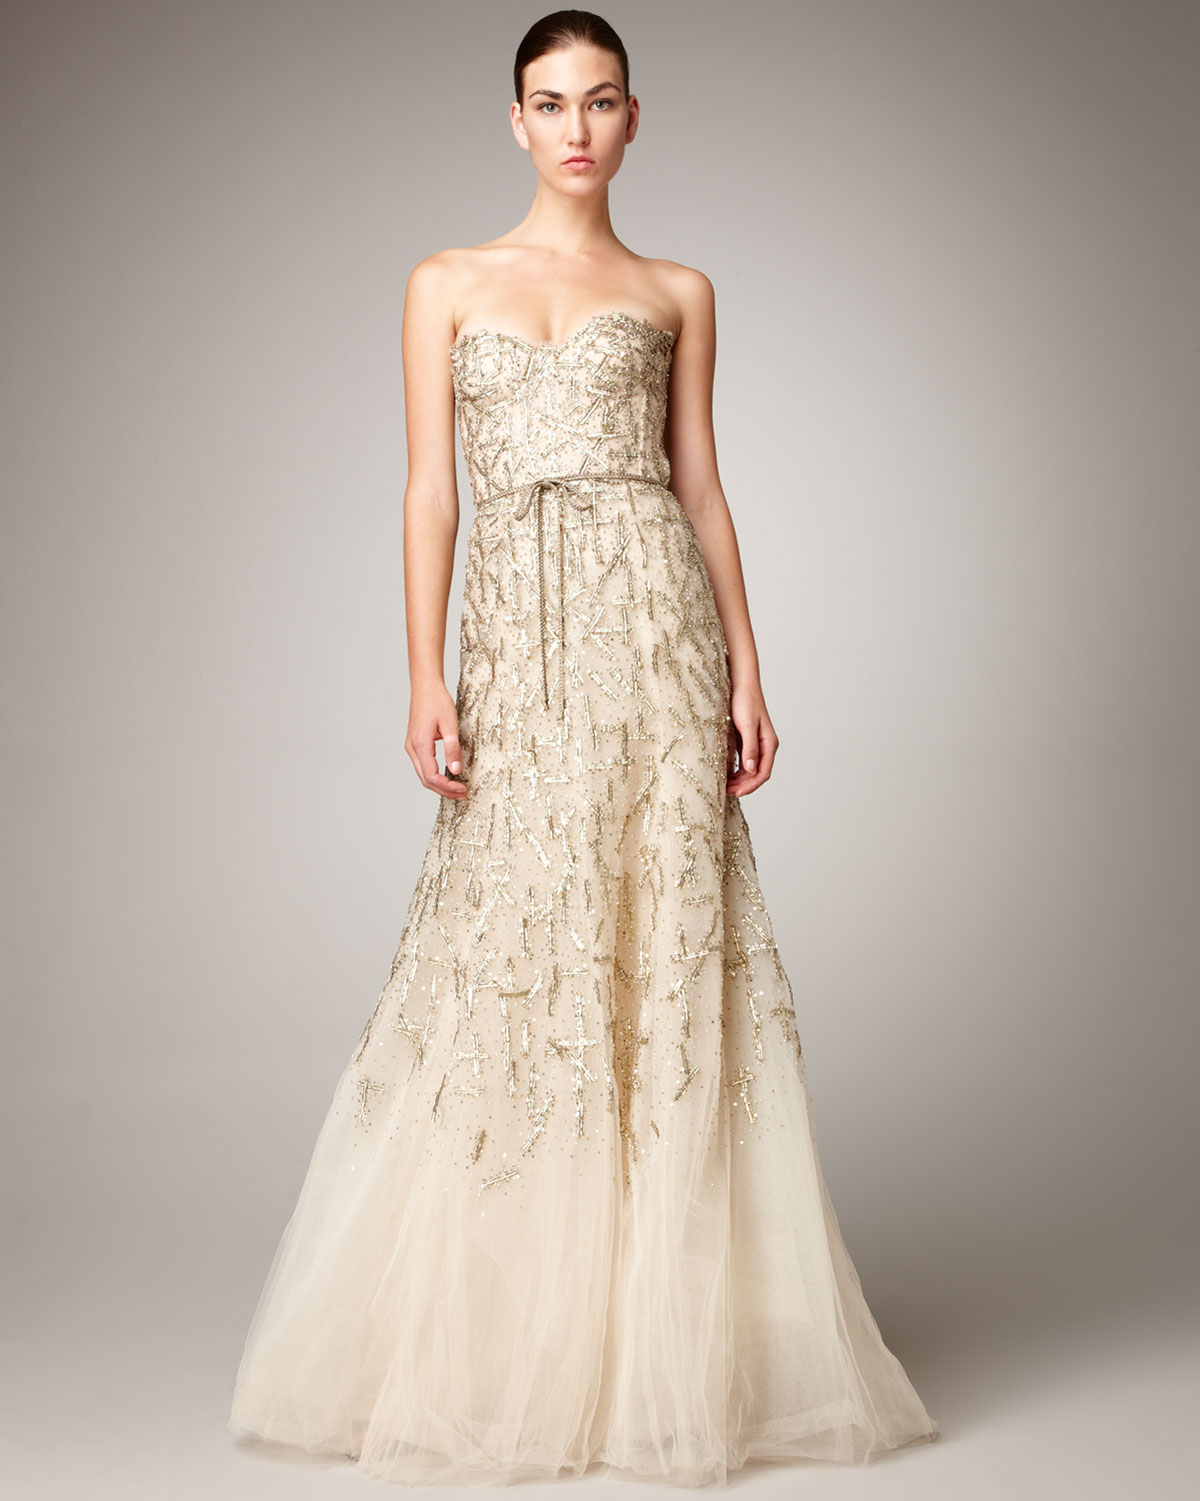 Monique Lhuillier Strapless Lace Wedding Dress 6